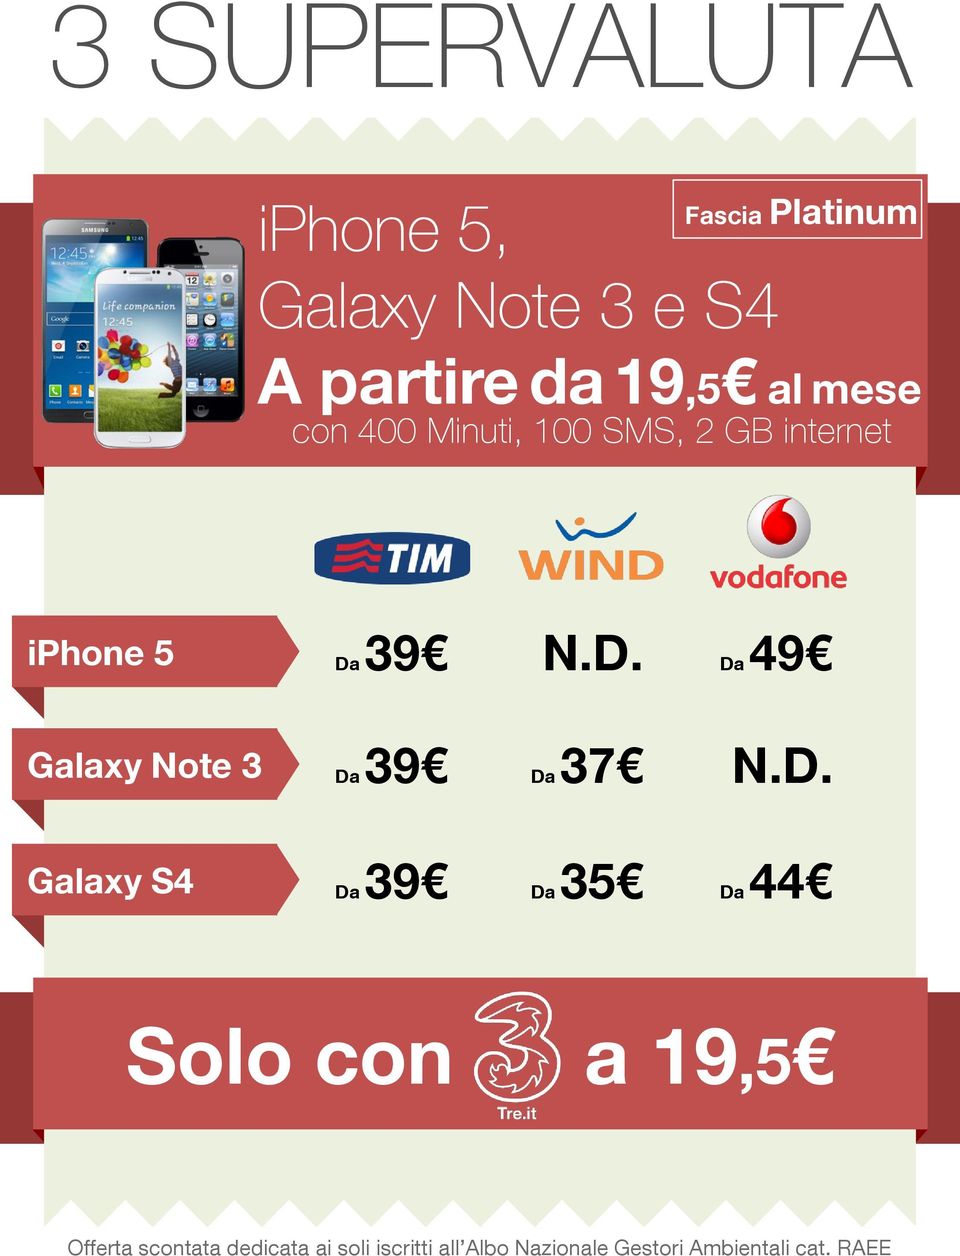 GB internet iphone 5 Galaxy Note 3 Galaxy S4 Da 39 N.